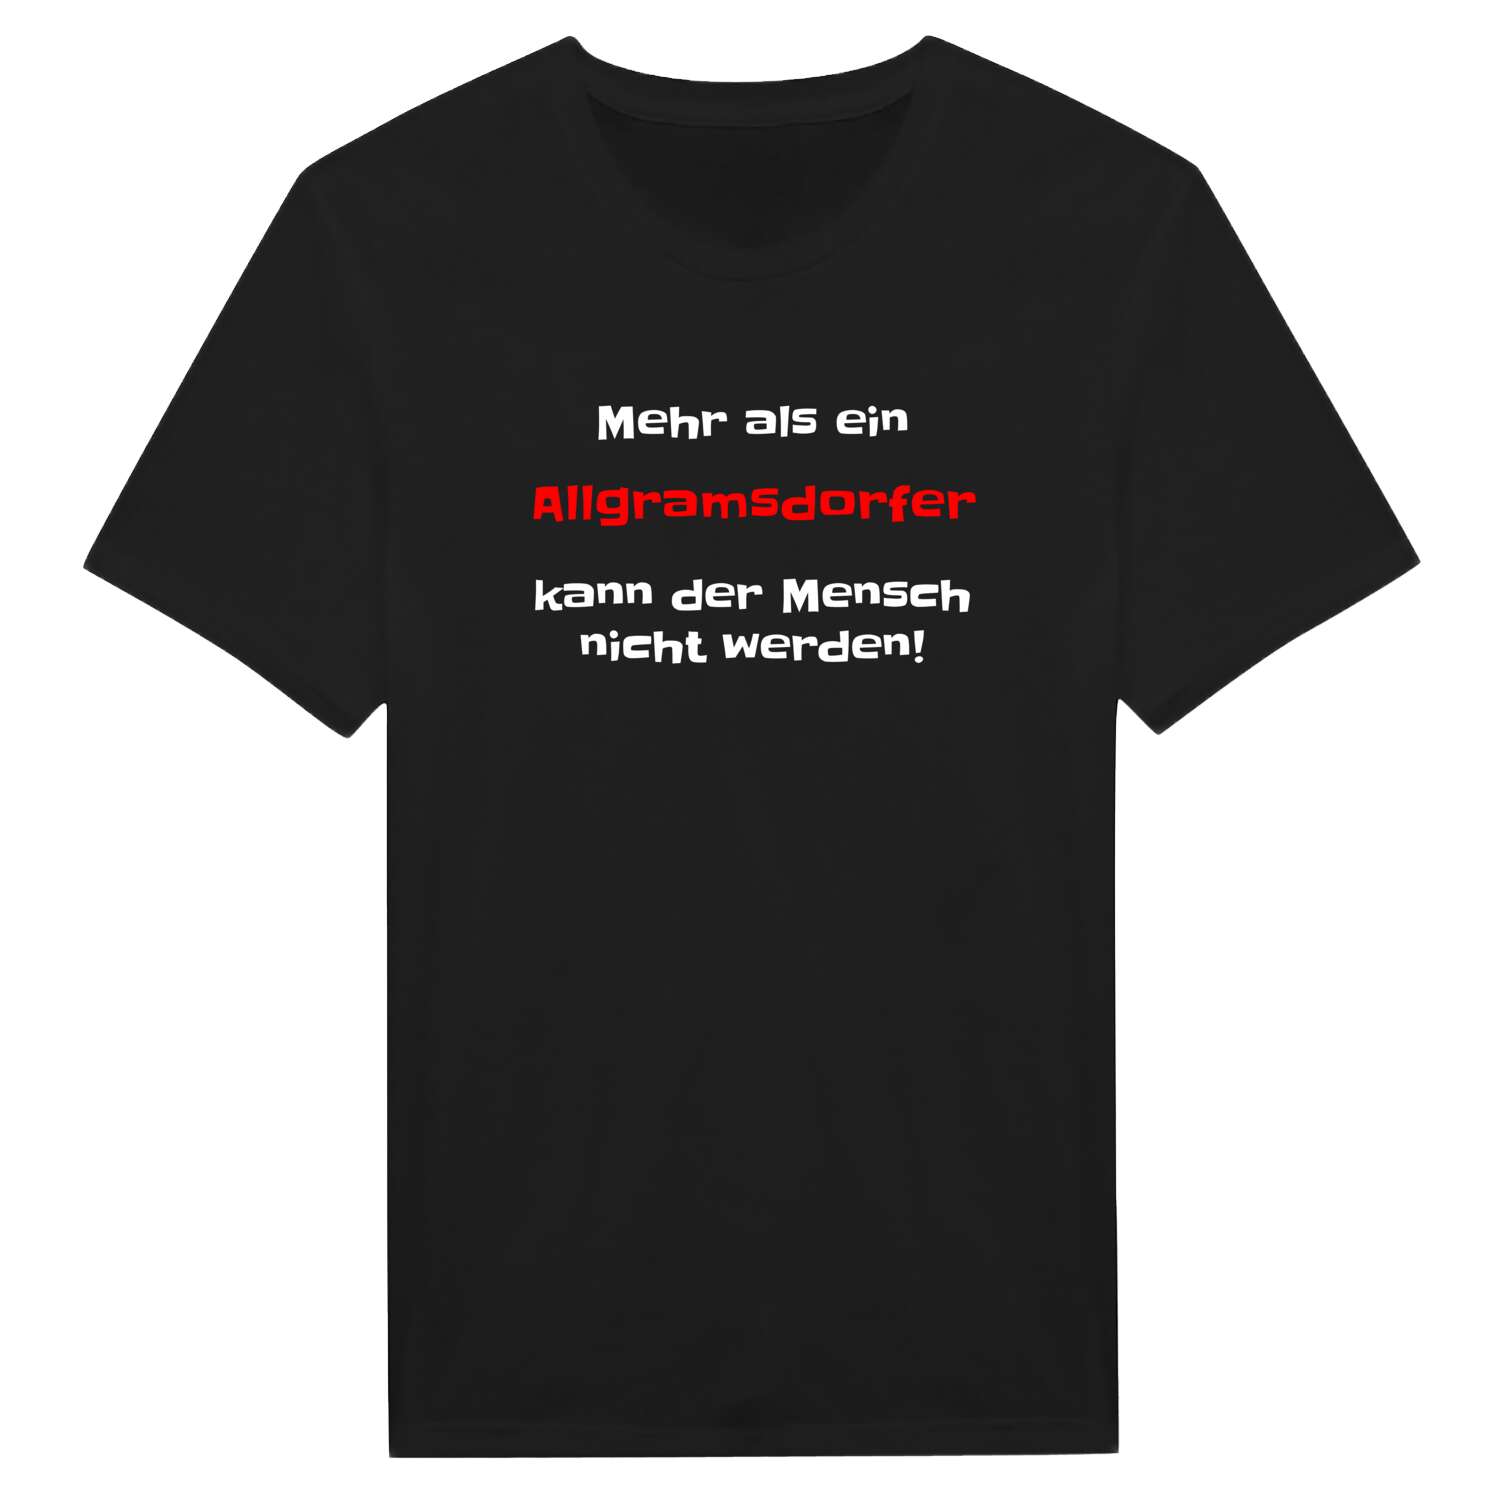 Allgramsdorf T-Shirt »Mehr als ein«